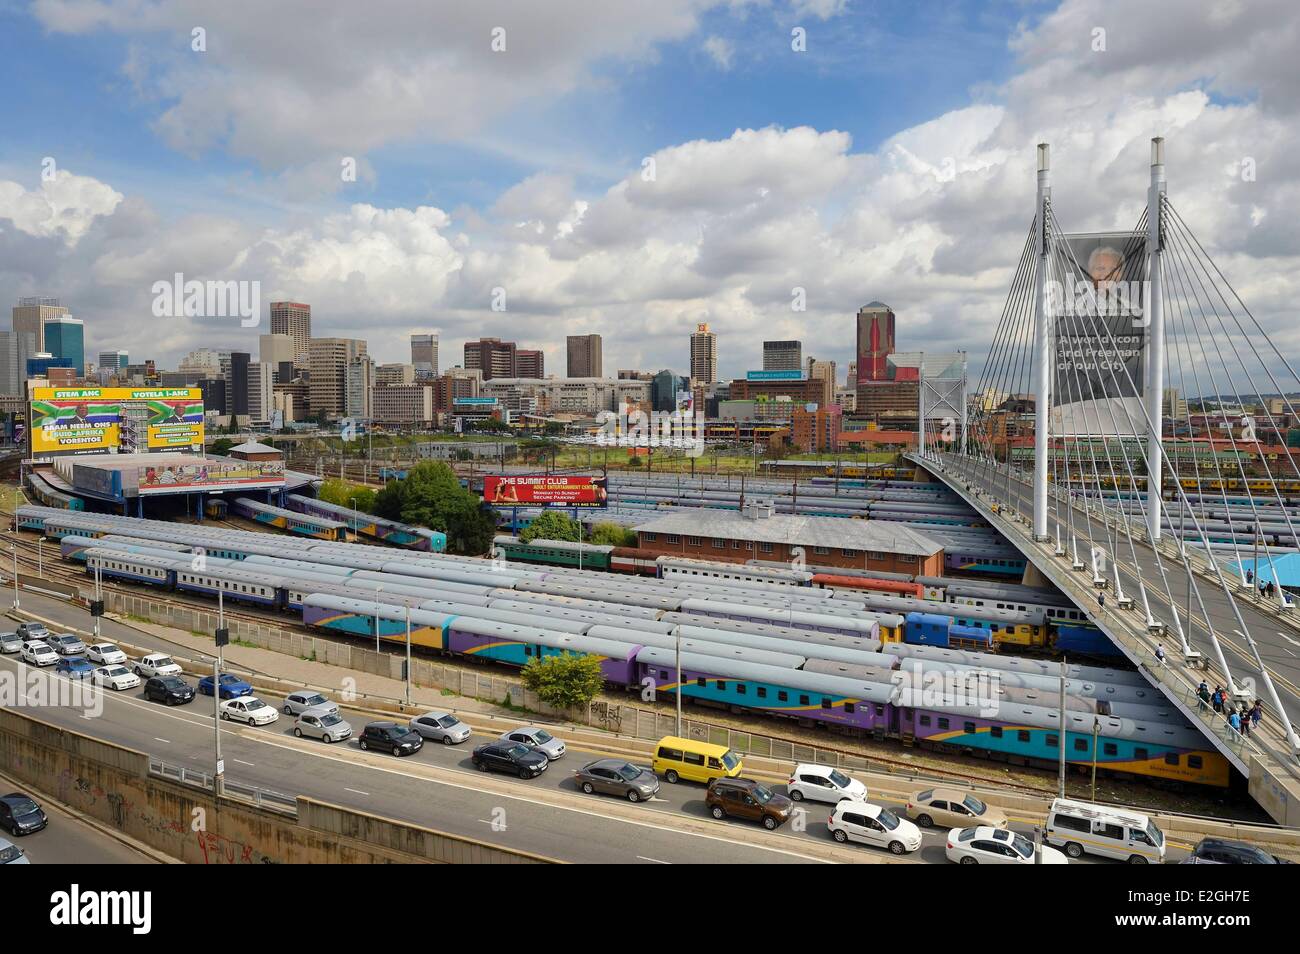 L'Afrique du Sud la province de Gauteng Johannesburg Nelson Mandela bridge plus de wagons de train, à Park Station et Johannesburg CBD (Central Business District) vu district de Braamfontein Banque D'Images